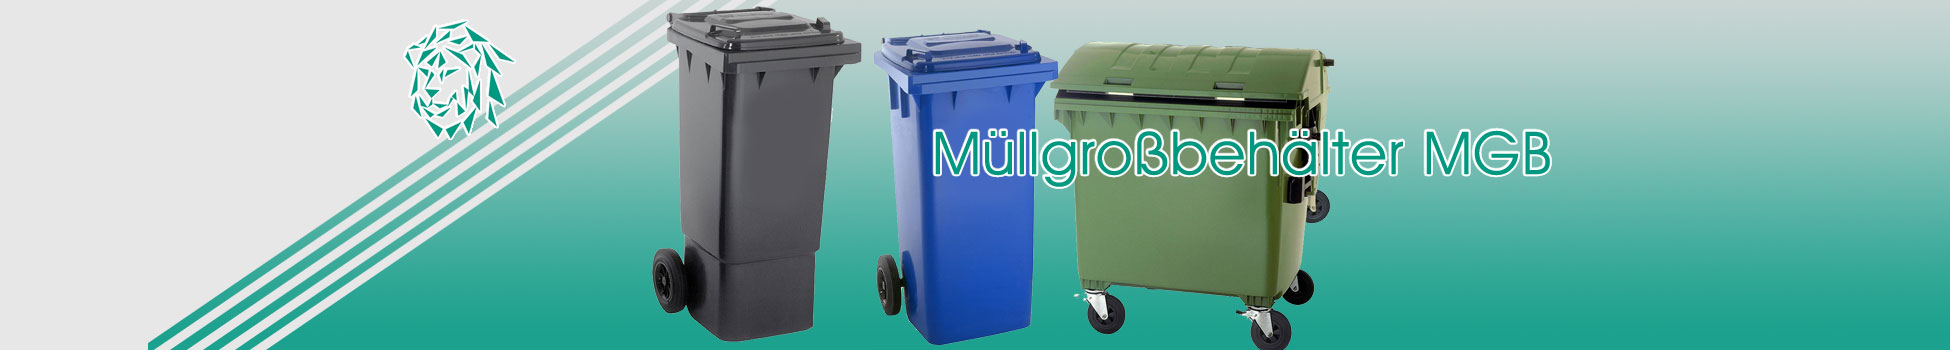 Müllgroßbehälter MGB, Abfallsammelbehälter, Abfallkörbe, Mülltonnen, Abfalleimer und Entsorgungsbehälter sind für die verschiedensten Arten der Abfallentsorgung geeignet